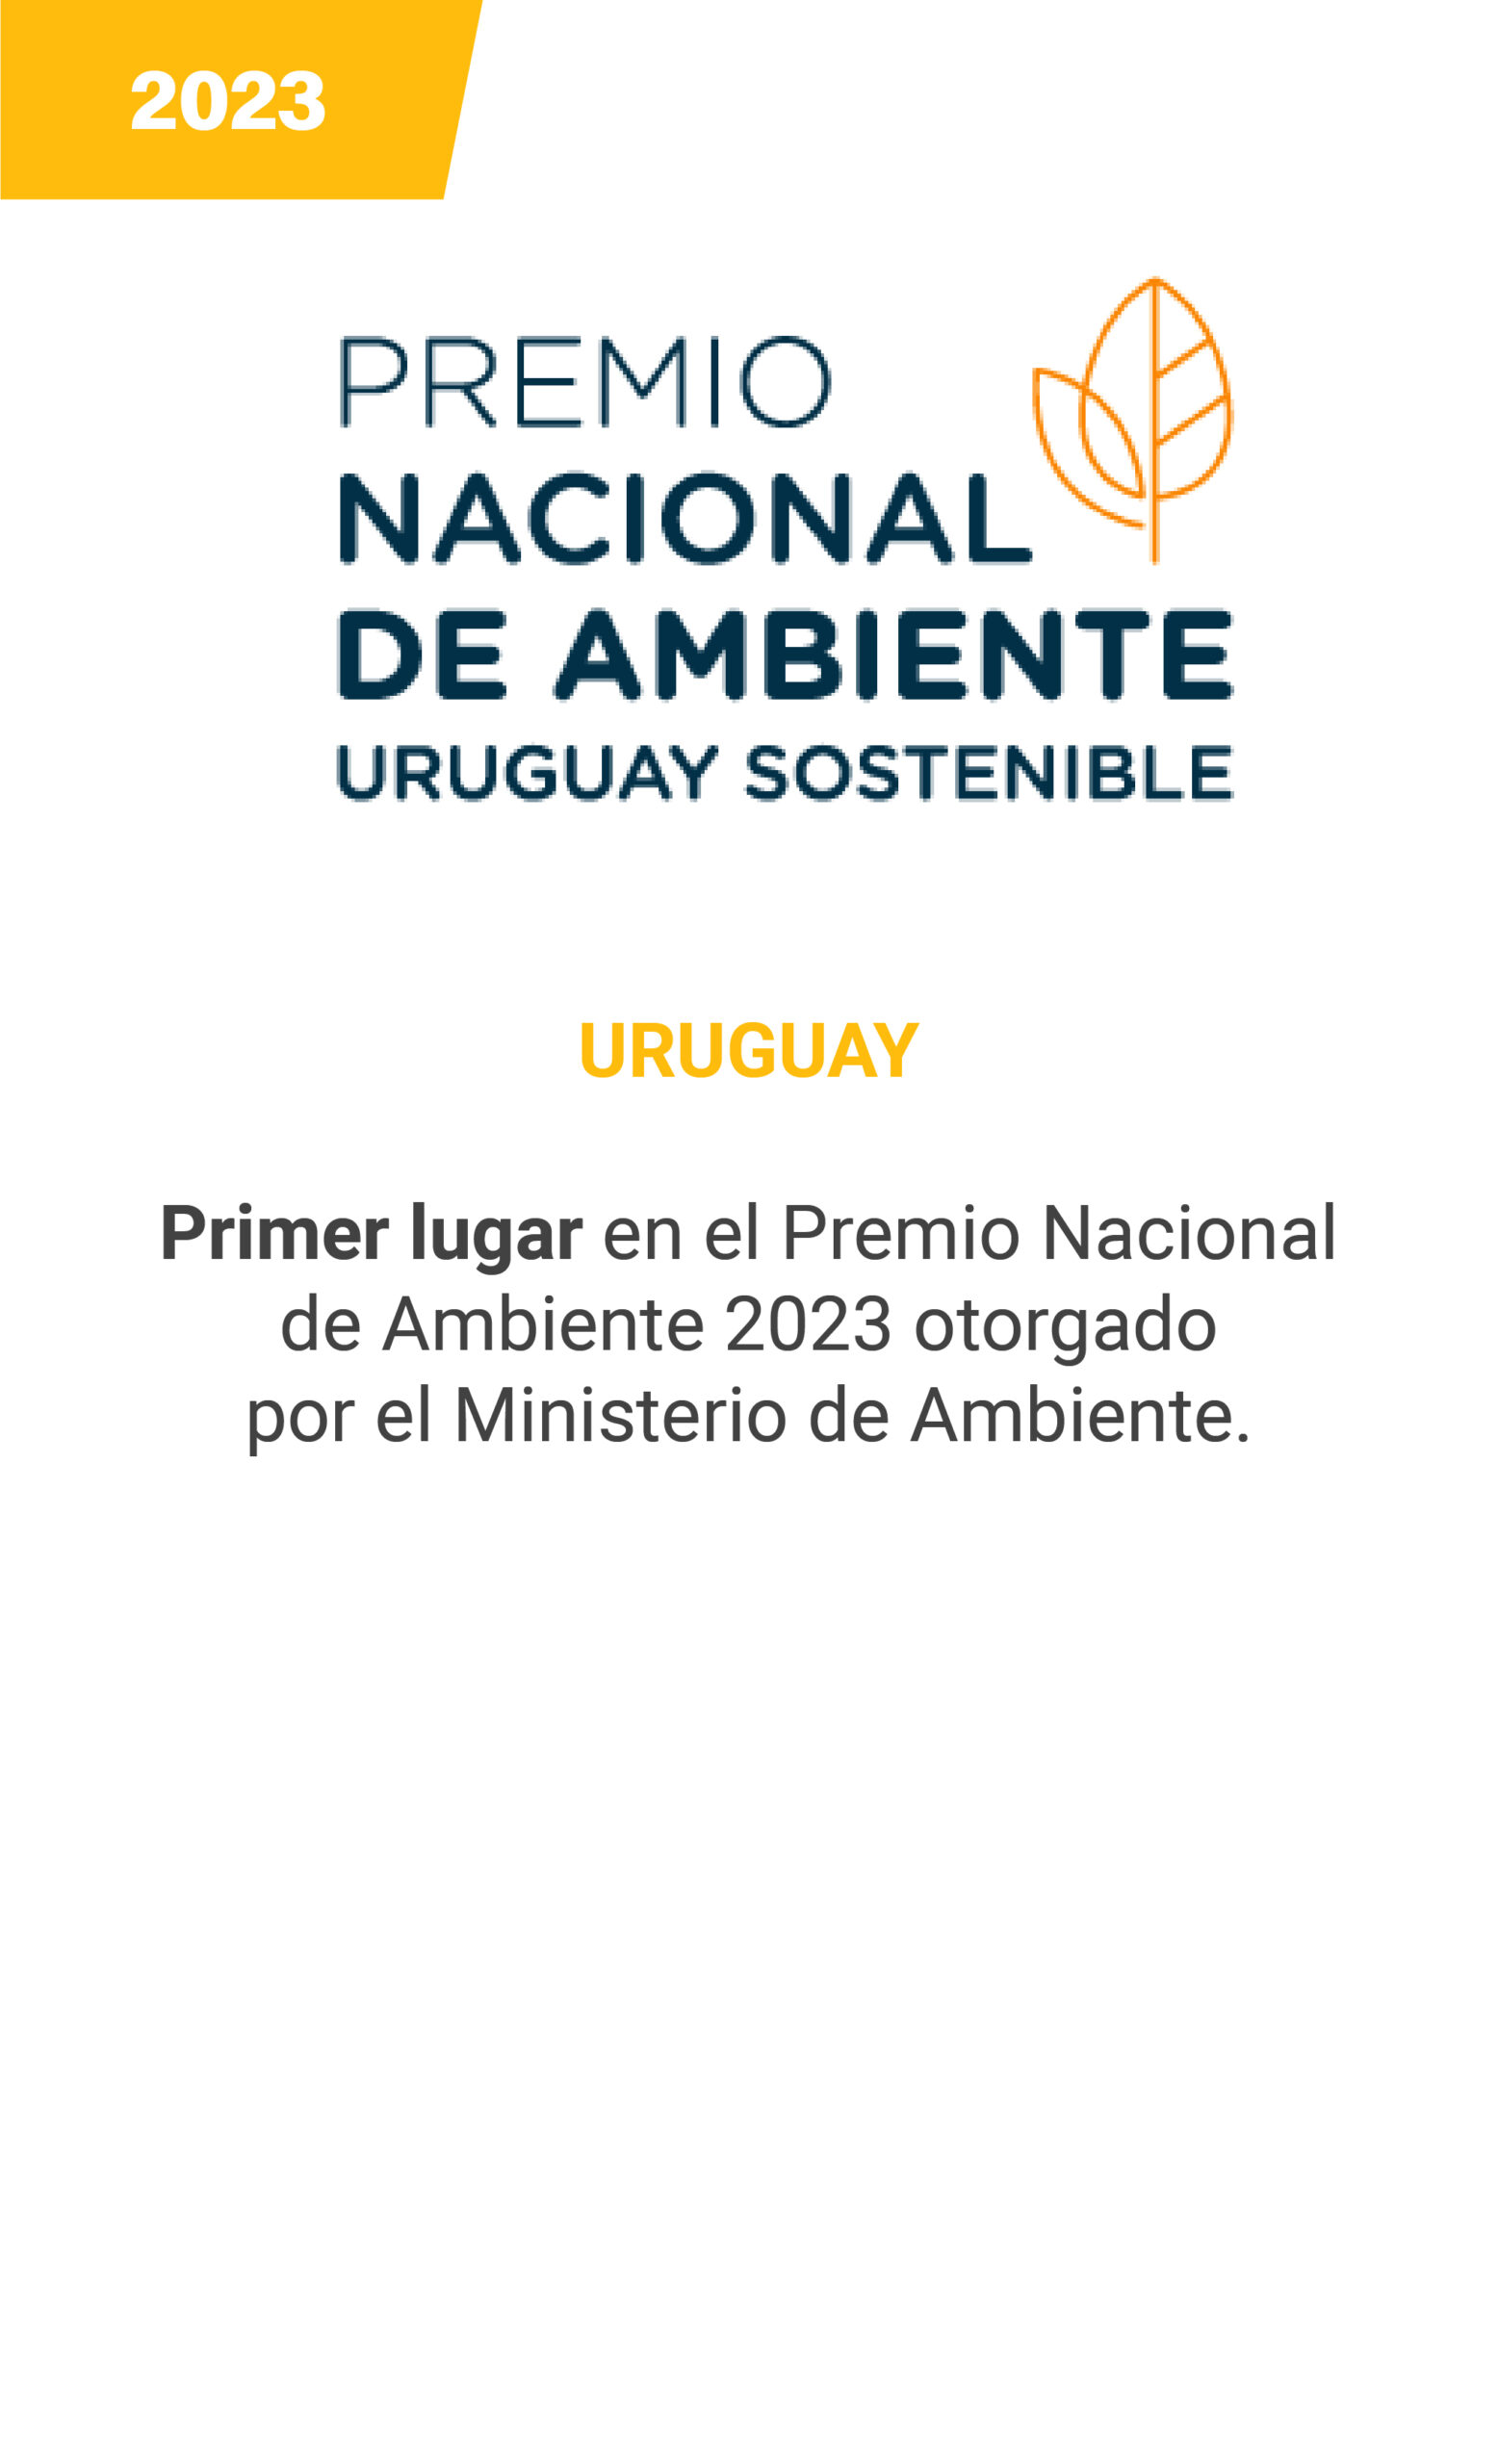 PNA - Uruguay - mobile